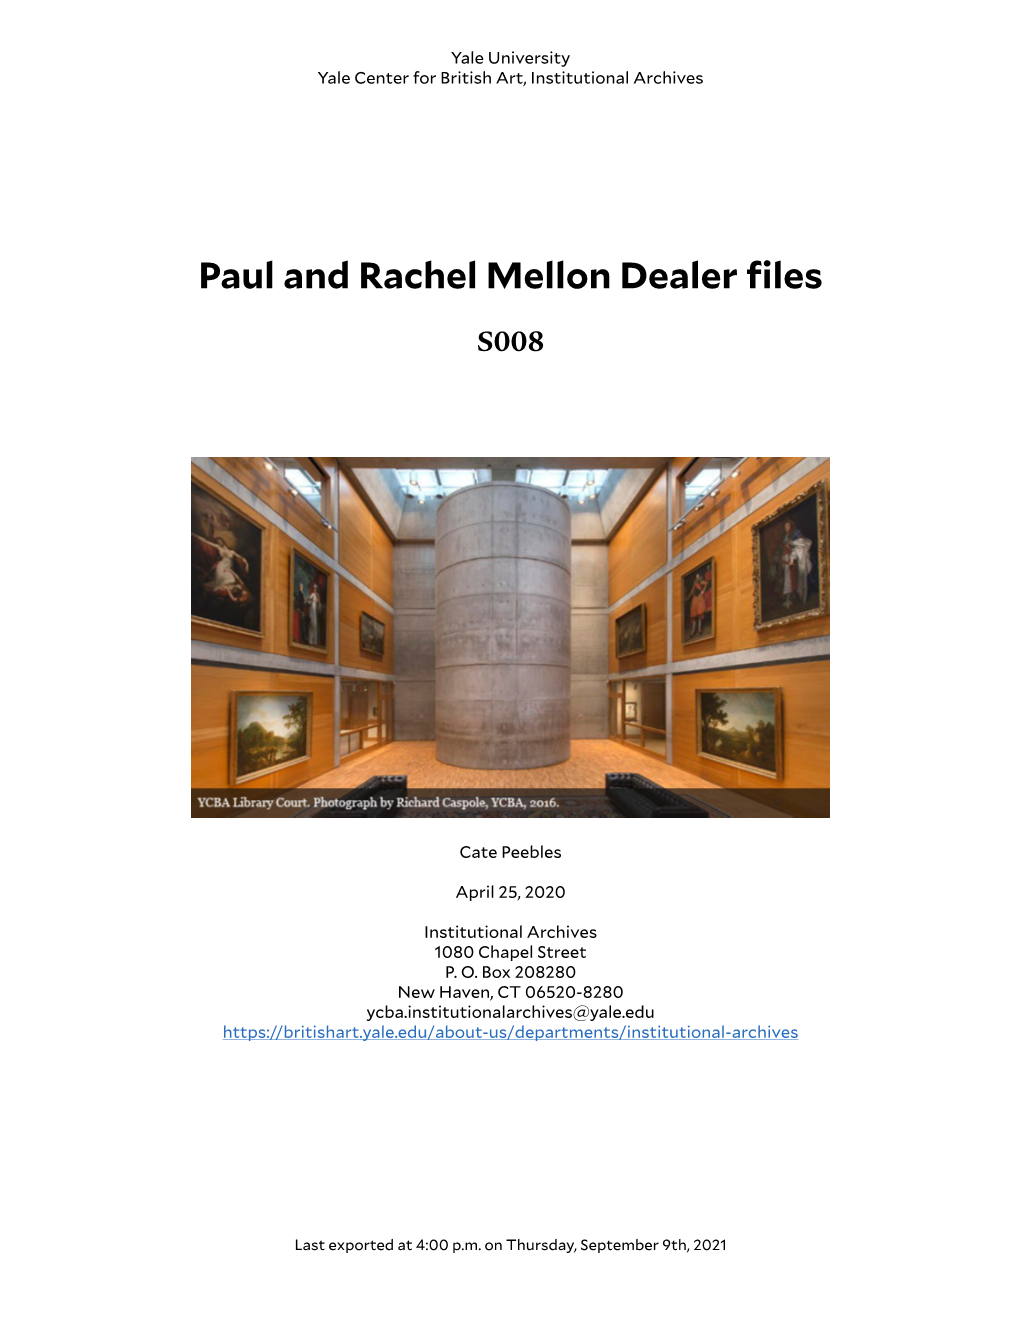 Paul and Rachel Mellon Dealer Files